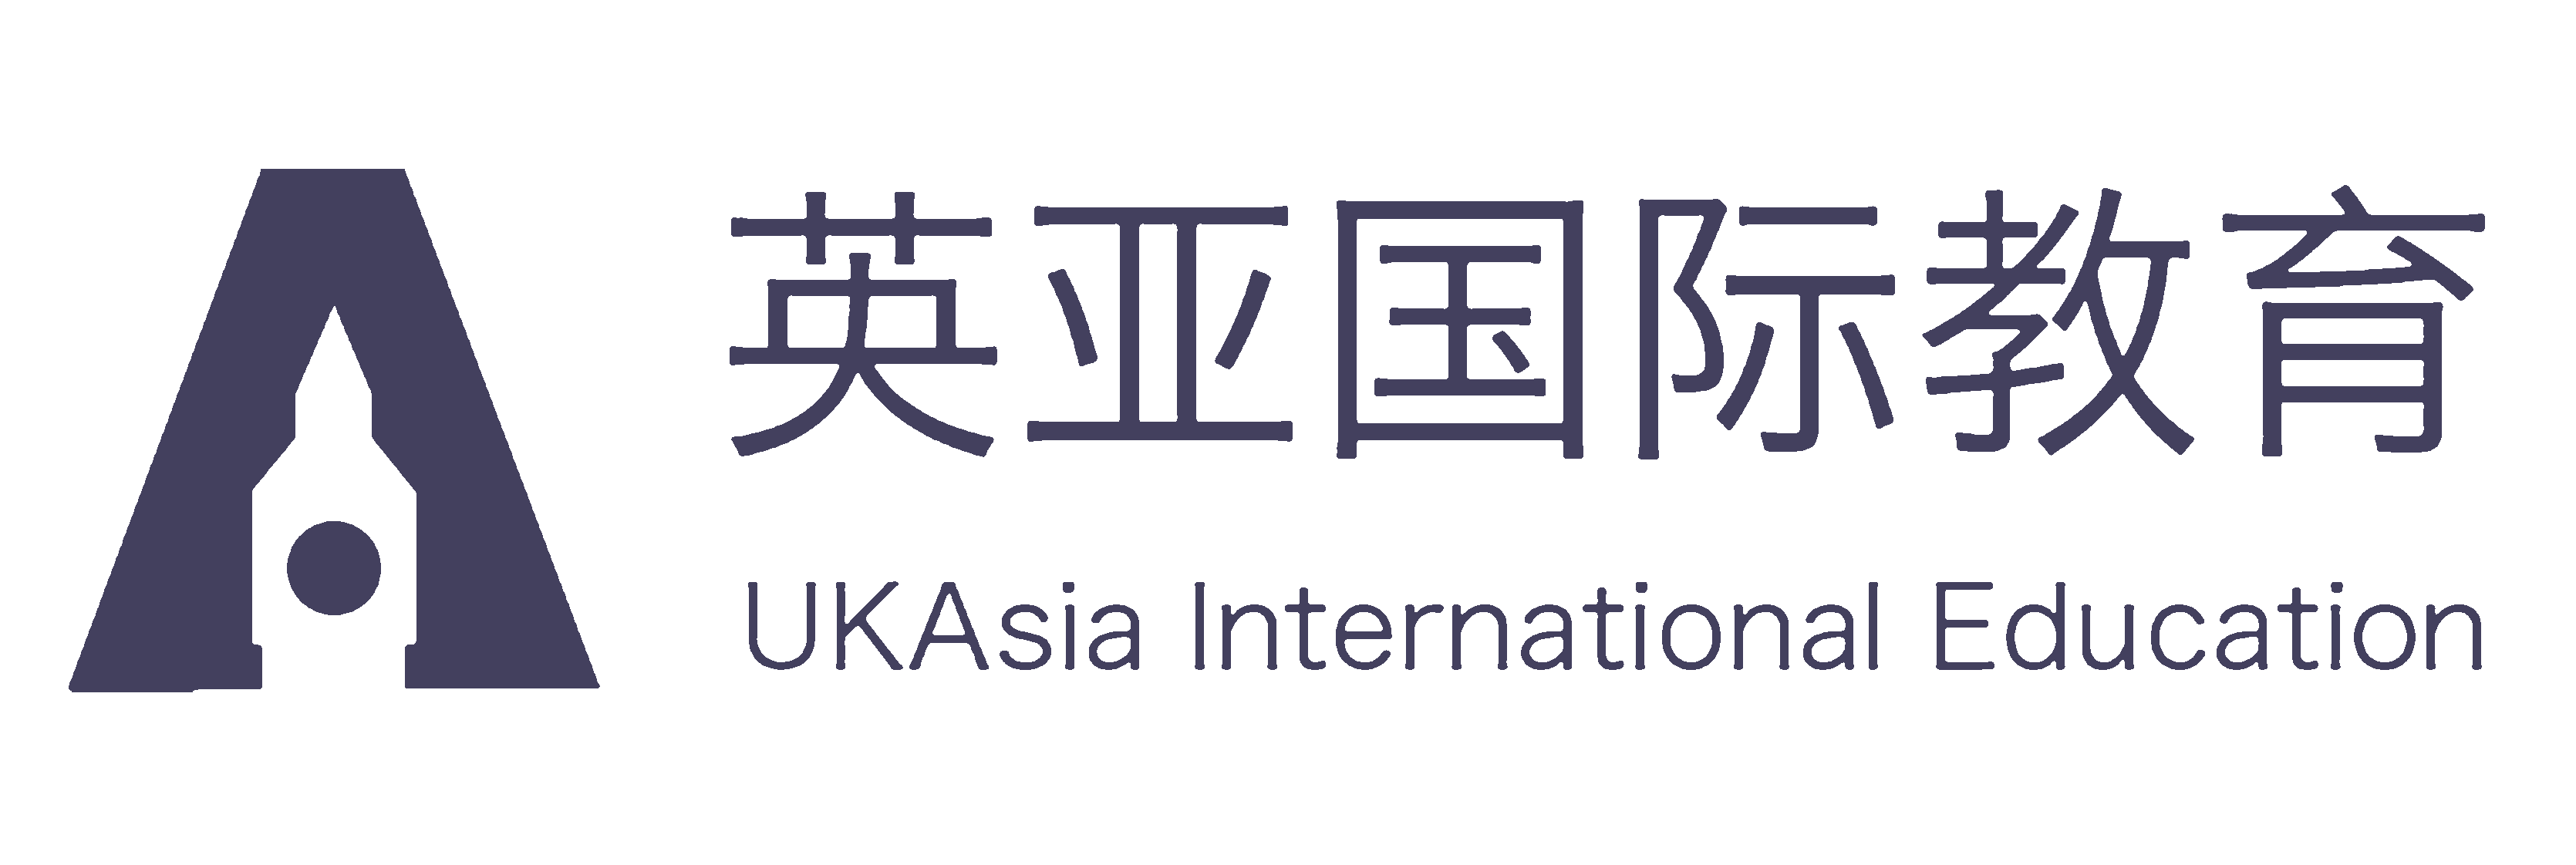 Ukasia International Education Holdings logo